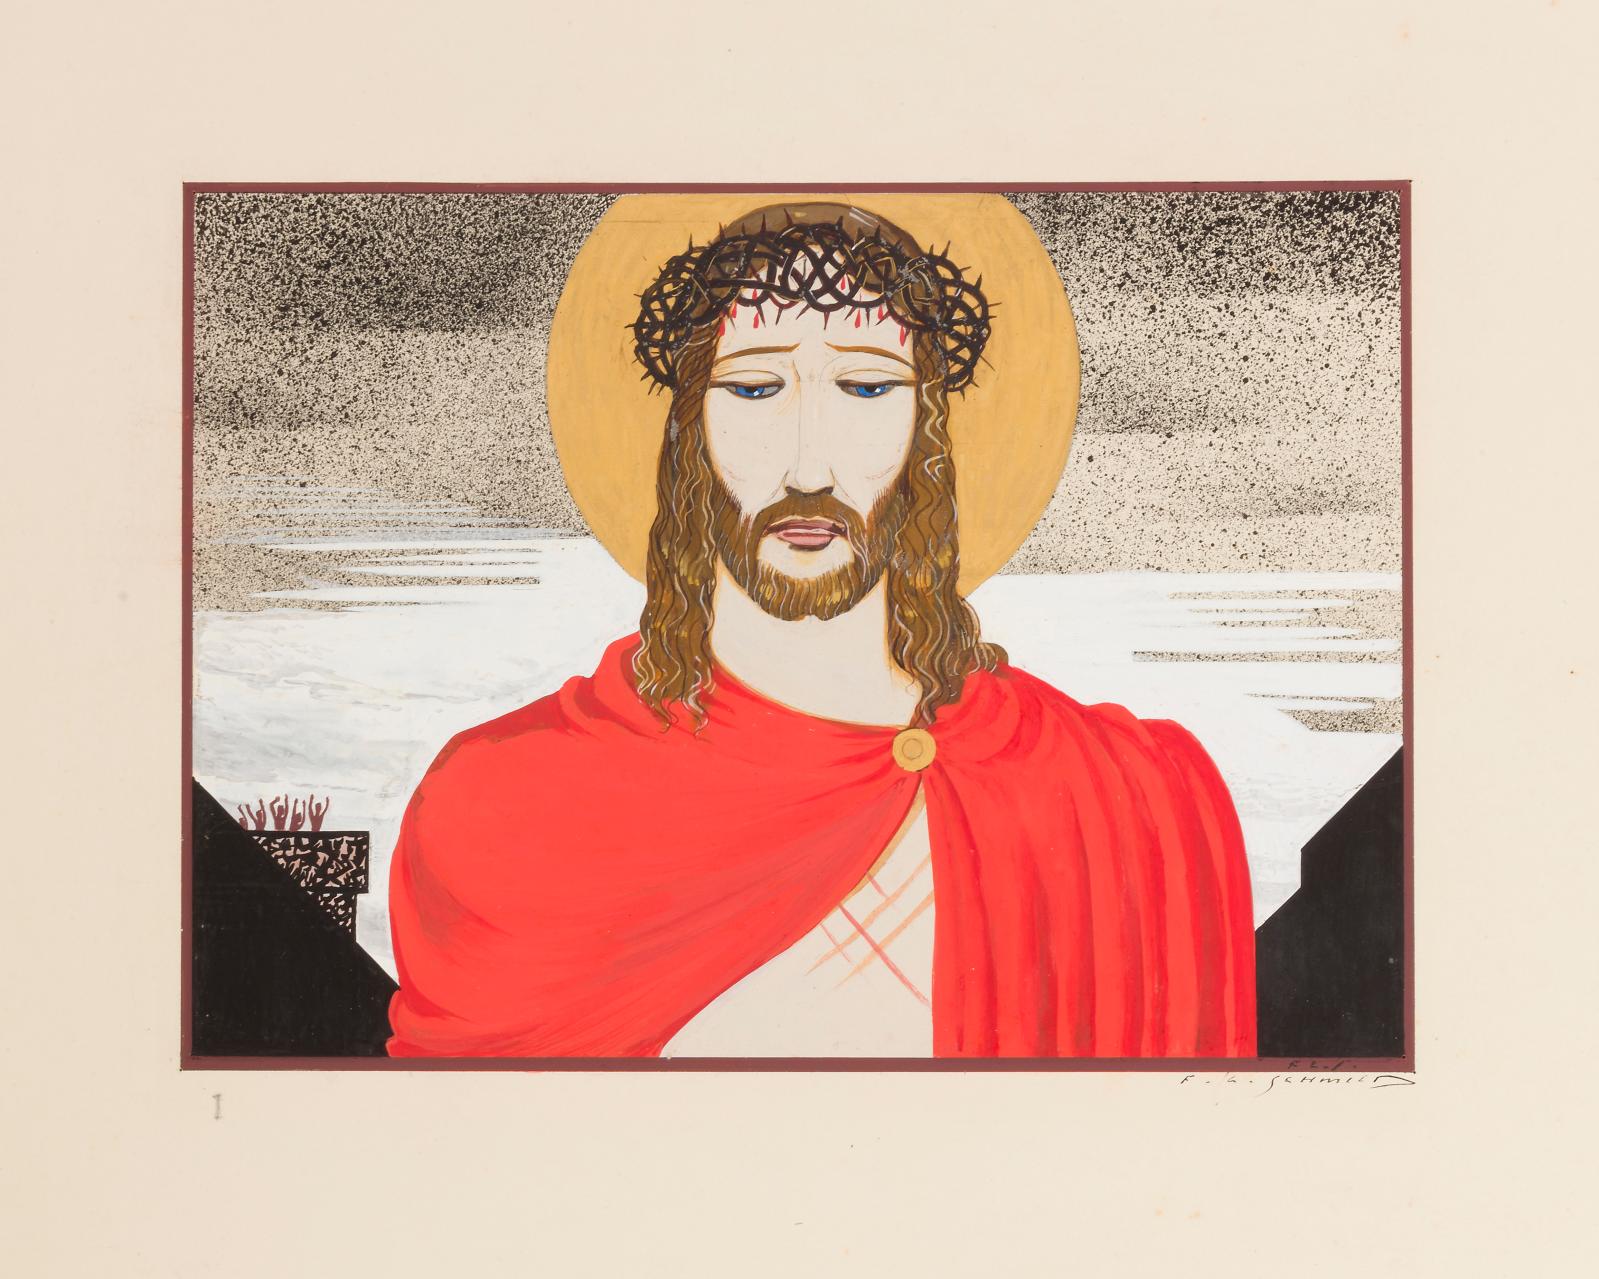 Les derniers moments du Christ illustrés par François-Louis Schmied